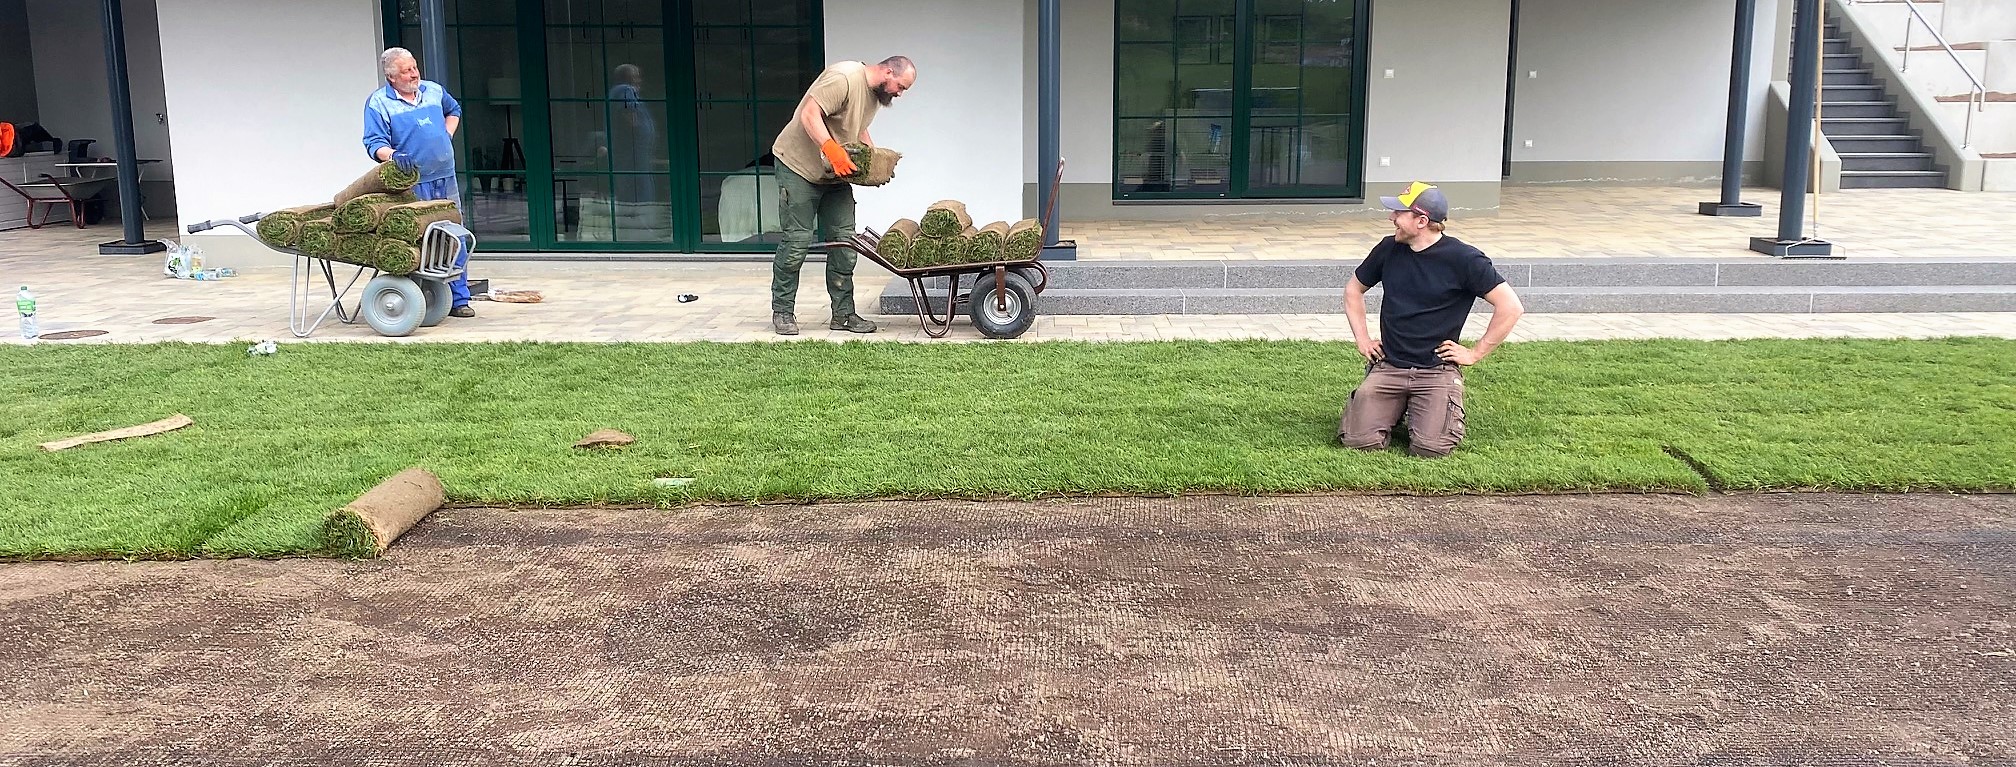 Rollrasenverlegung mit Maulwurfsperre im erzgebirgischen Stützengrün